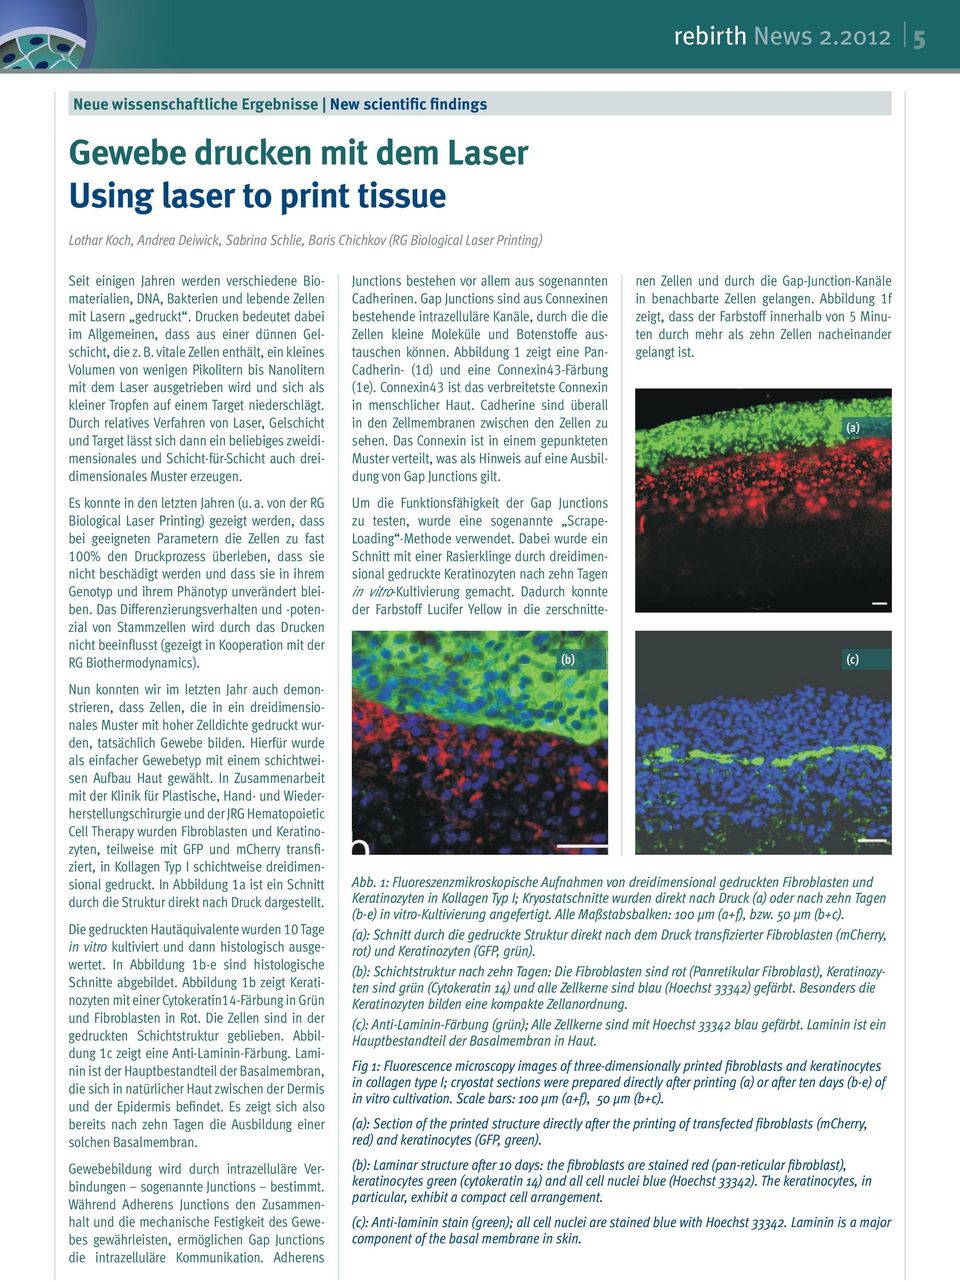 Laser Printing) Seit einigen Jahren werden verschiedene Biomaterialien, DNA, Bakterien und lebende Zellen mit Lasern gedruckt.